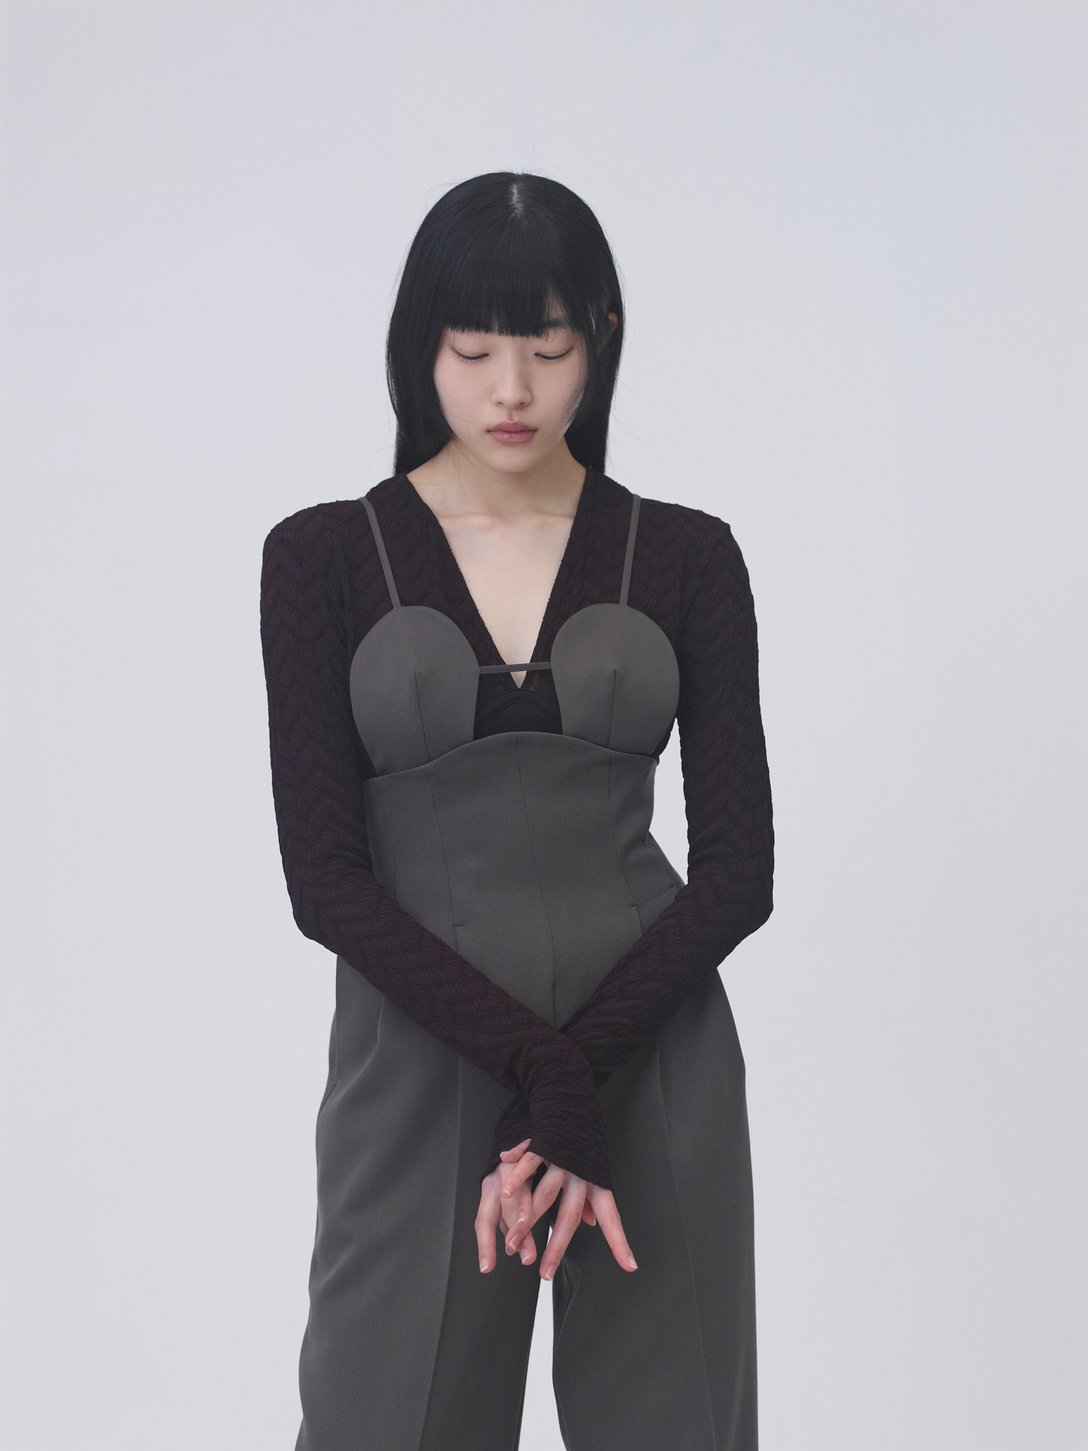 FETICOのオールインワンを身に纏う女性モデル